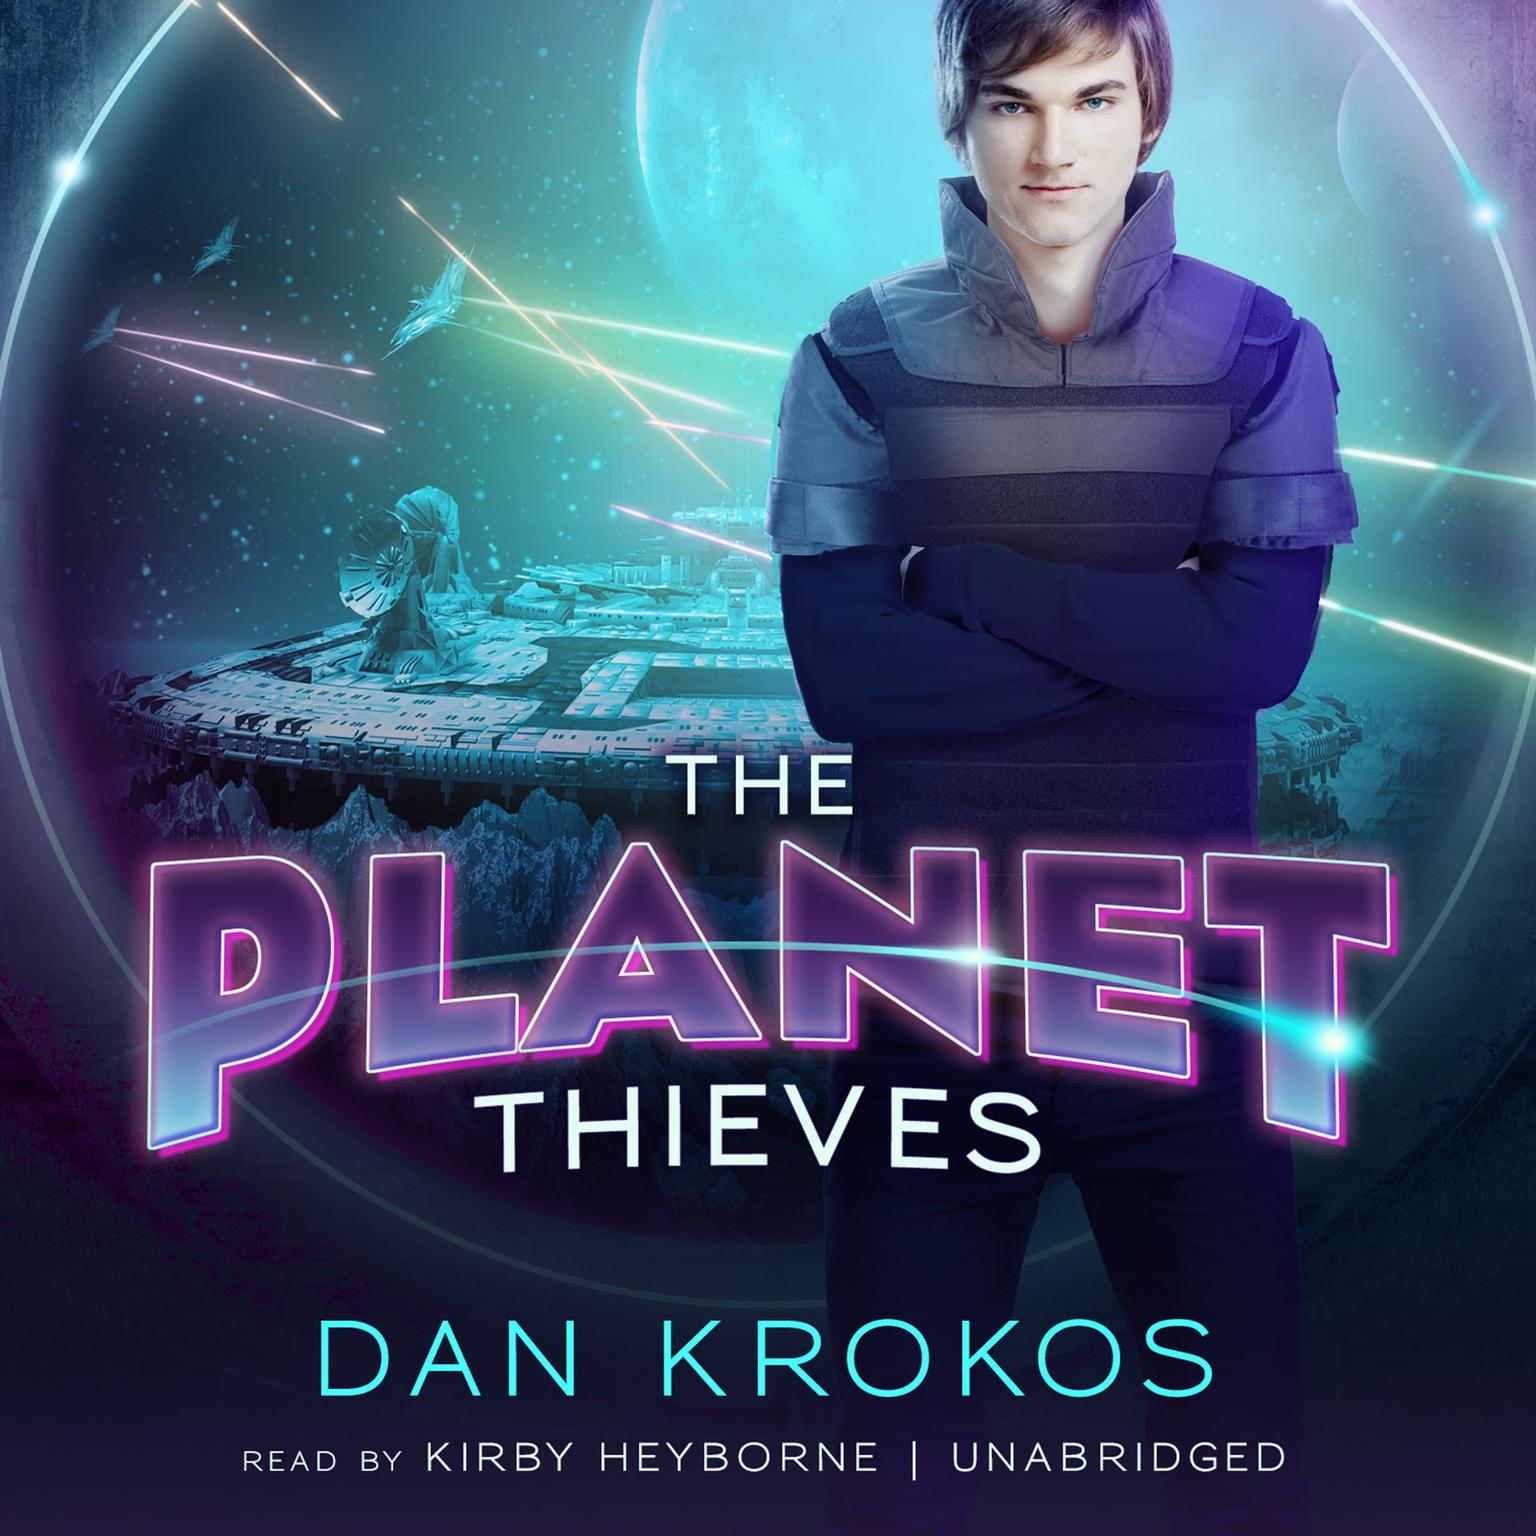 The Planet Thieves Audiobook, by Dan Krokos